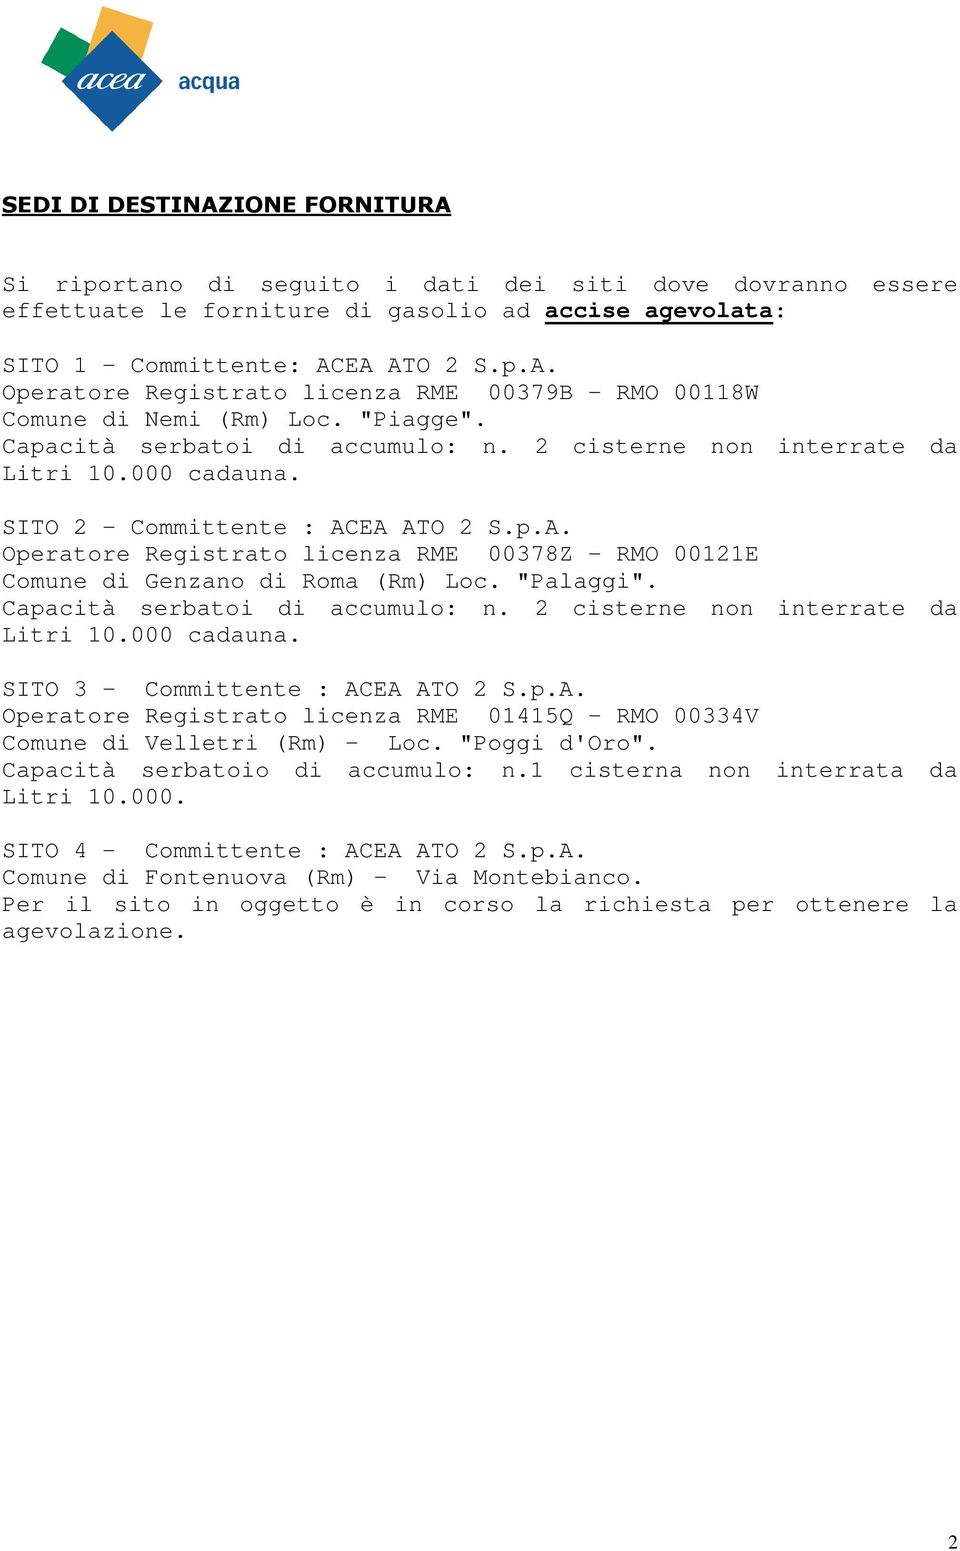 EA ATO 2 S.p.A. Operatore Registrato licenza RME 00378Z - RMO 00121E Comune di Genzano di Roma (Rm) Loc. "Palaggi". Capacità serbatoi di accumulo: n. 2 cisterne non interrate da Litri 10.000 cadauna.